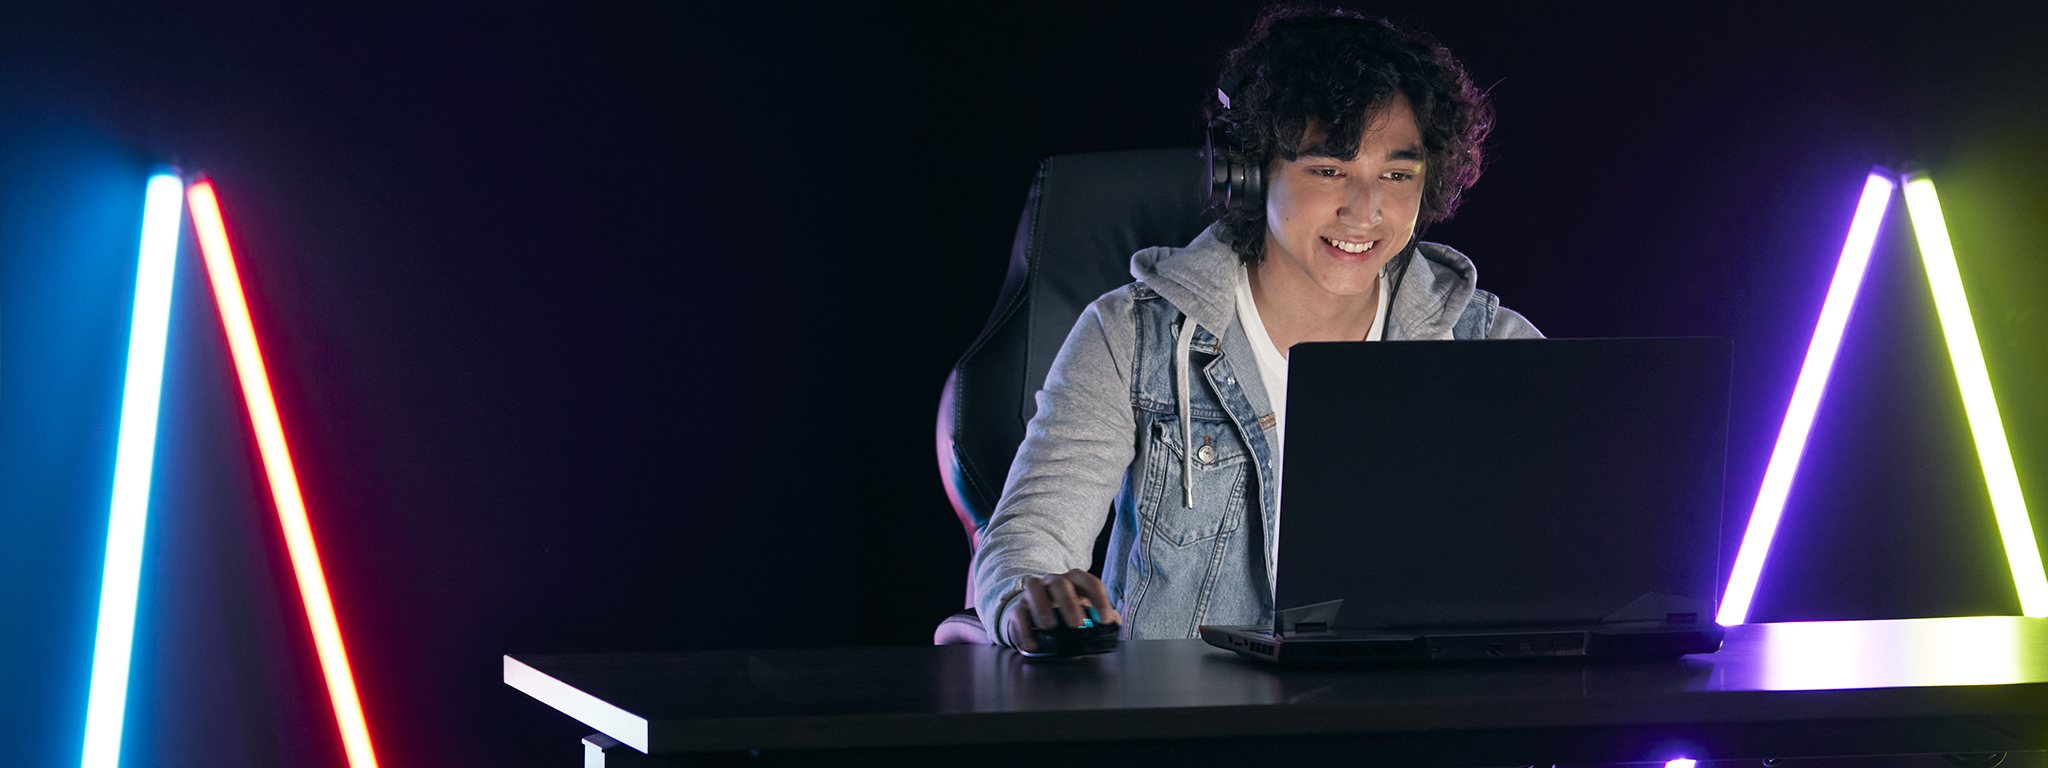 молодой геймер играет на своем ноутбуке в темной комнате